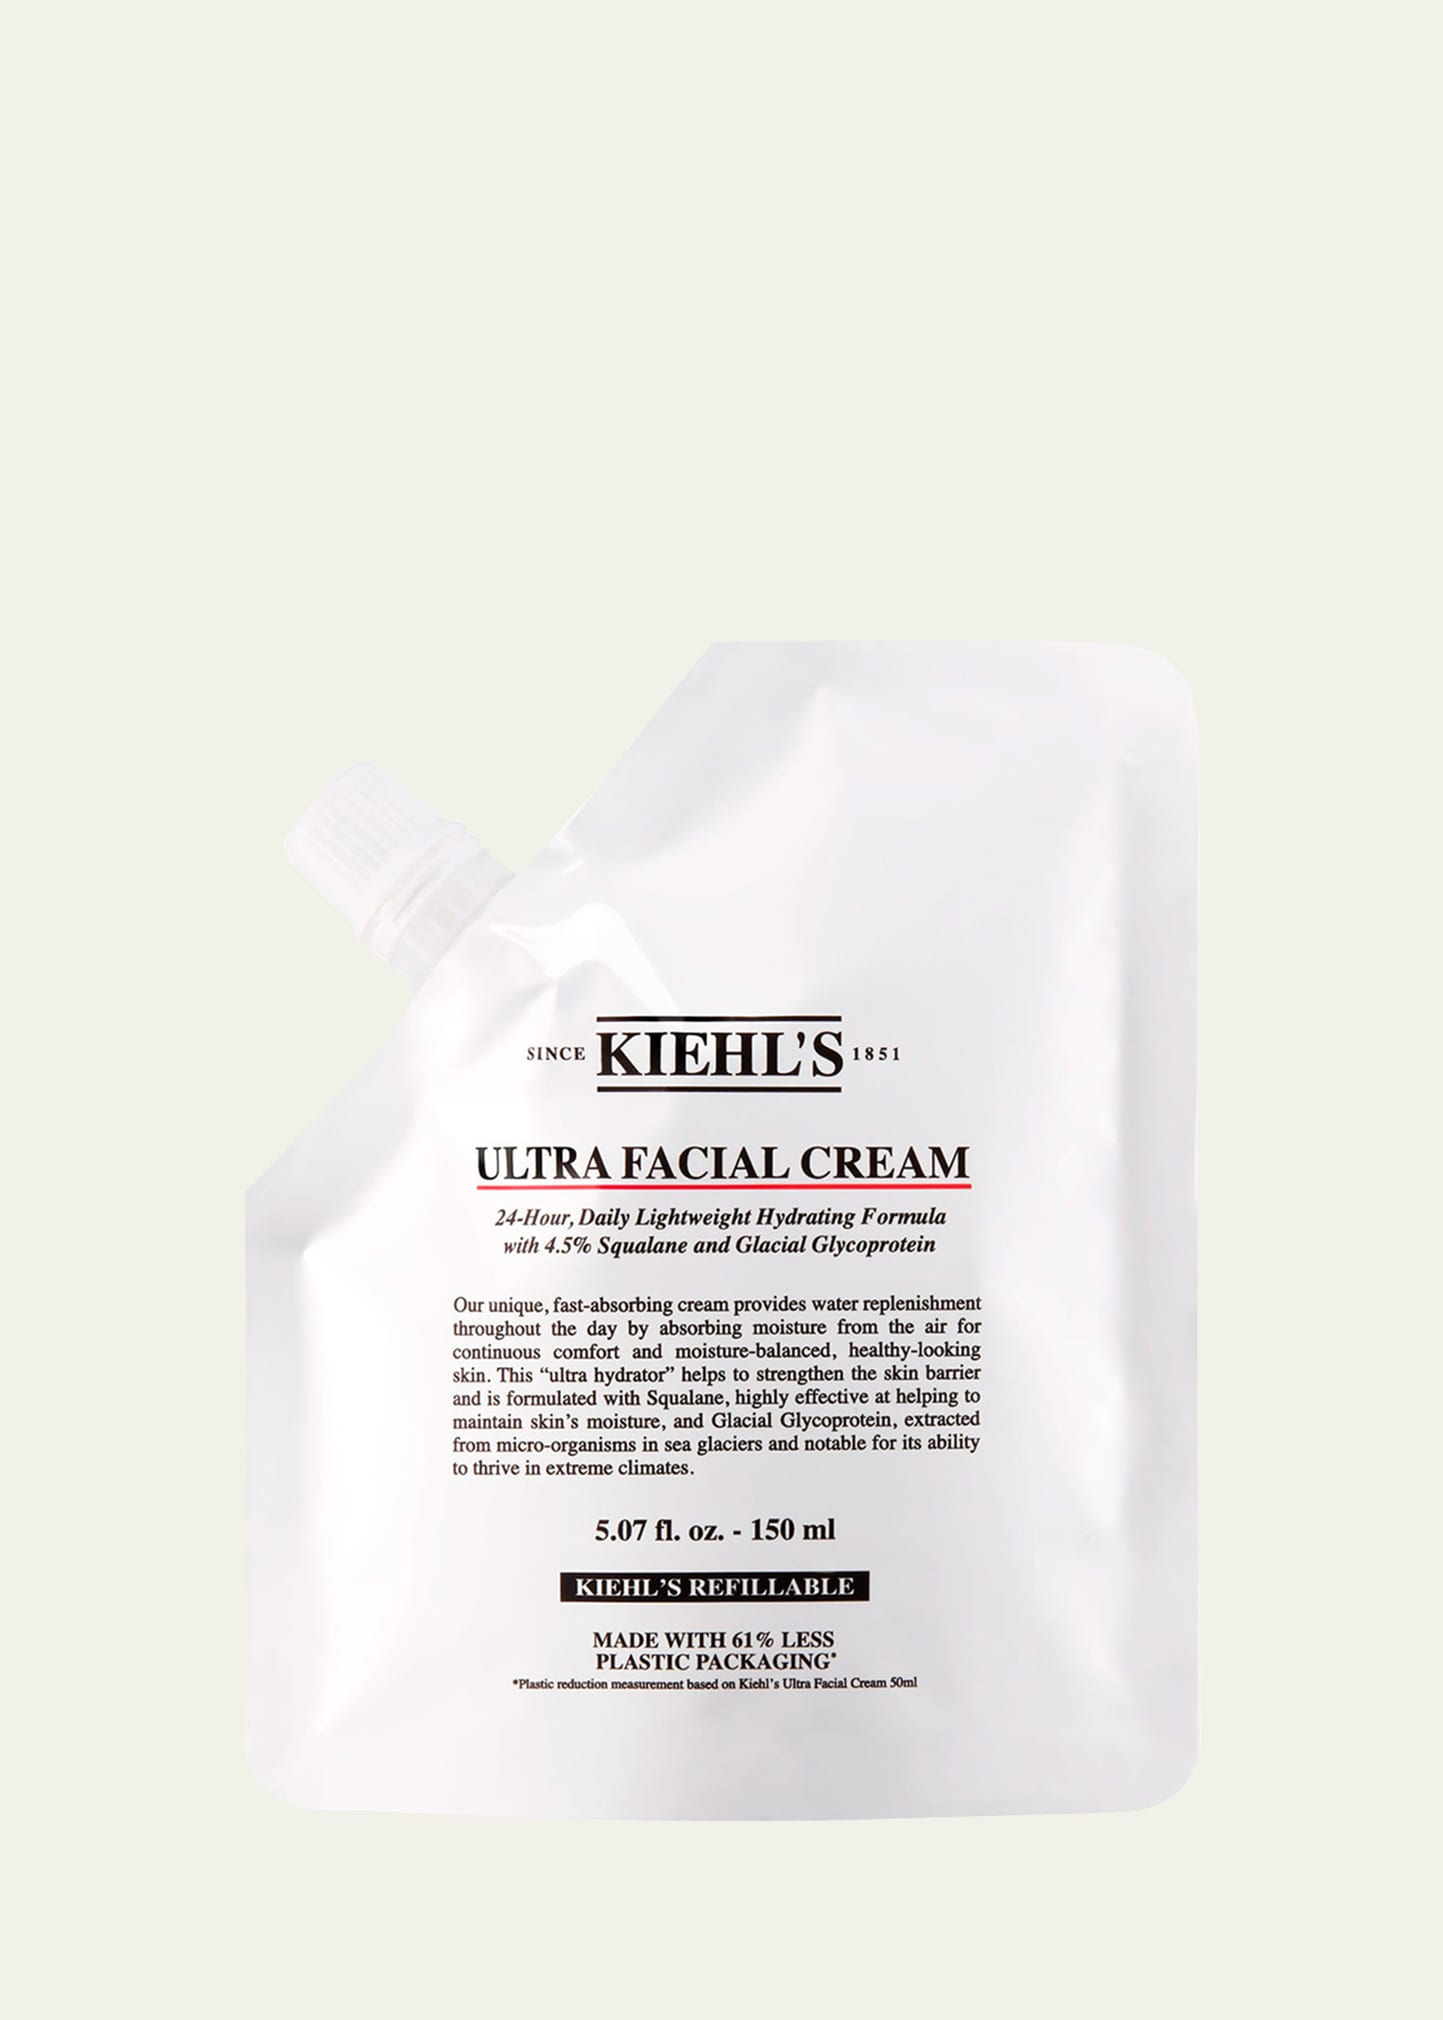 Ultra Facial Cream Refill Pouch, 5 oz.